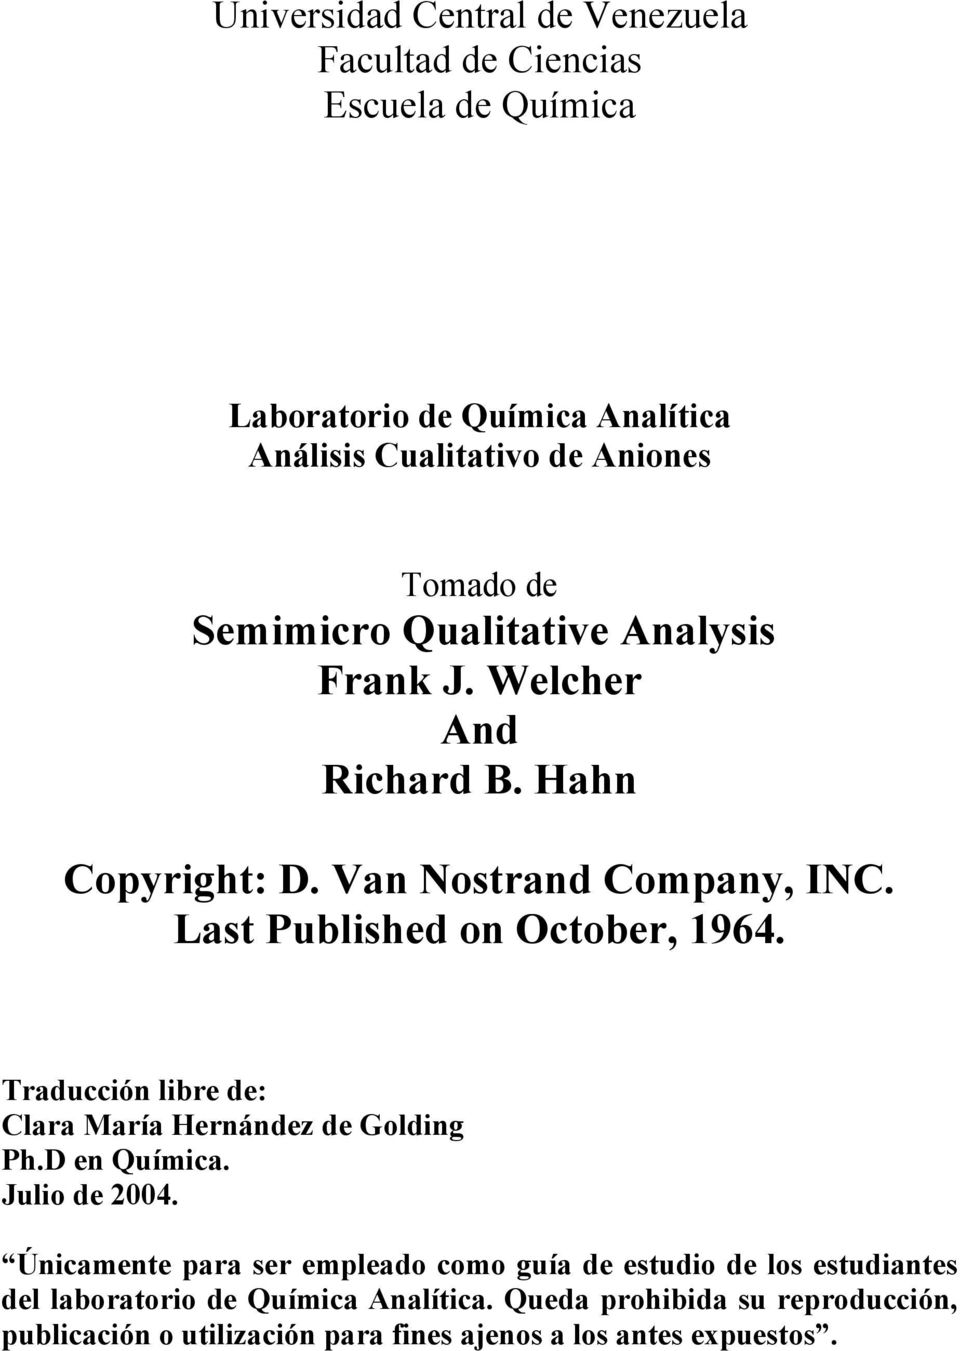 Traducción libre de: Clara María Hernández de Golding Ph.D en Química. Julio de 2004.